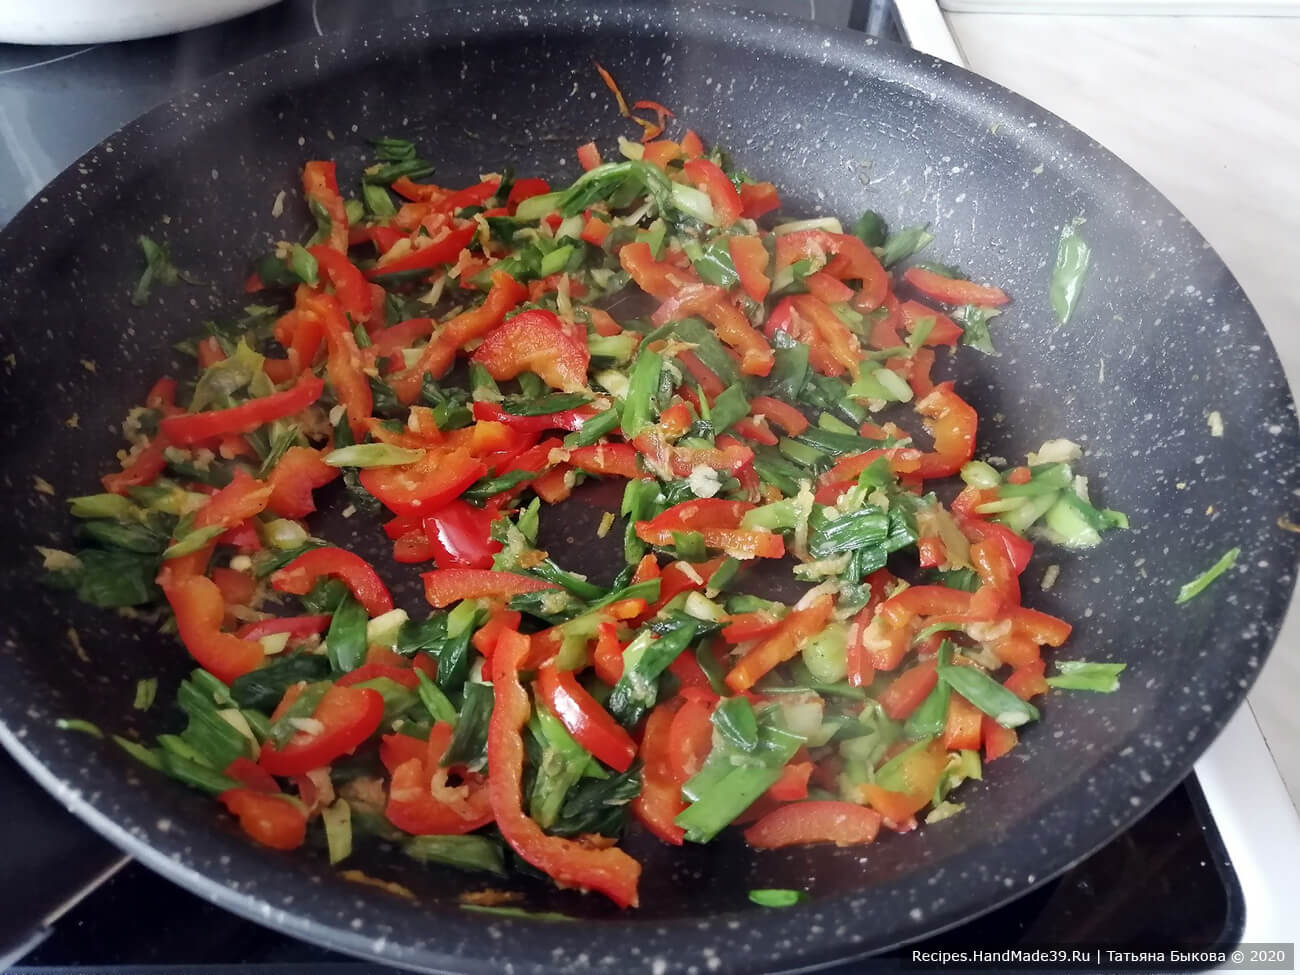 Разогрейте оливковое масло в сковороде и обжарьте лук, чеснок, имбирь и перец до мягкости